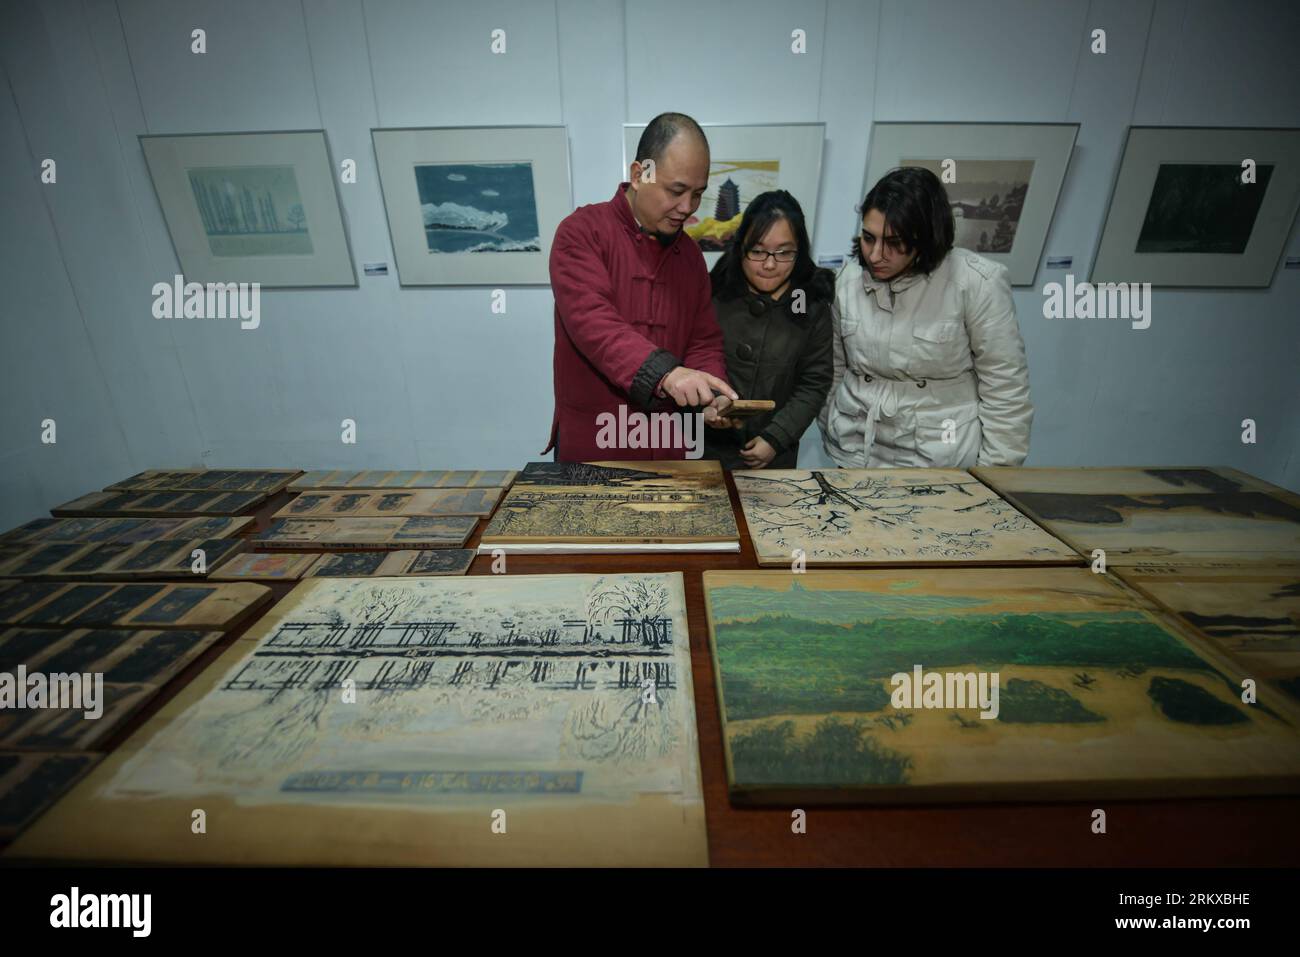 Bildnummer : 58936369 Datum : 20.12.2012 Copyright : imago/Xinhua (121220) -- HANGZHOU, 20 décembre 2012 (Xinhua) -- Wei Lizhong (à gauche), héritier de la technique de peinture sur bois et conservateur du Shizhuzhai Art Museum, présente les œuvres de peinture sur bois aux étudiants étrangers au Shizhuzhai Art Museum à Hangzhou, capitale de la province du Zhejiang de l est de la Chine, le 20 décembre 2012. Des étudiants de pays tels que le Brésil, l'Afrique du Sud et Singapour viennent spécialement pour apprendre les peintures sur bois au musée d'art pendant un mois. La technique de l'impression sur bois a été classée comme un patrimoine culturel intangbile d'état de Chin Banque D'Images